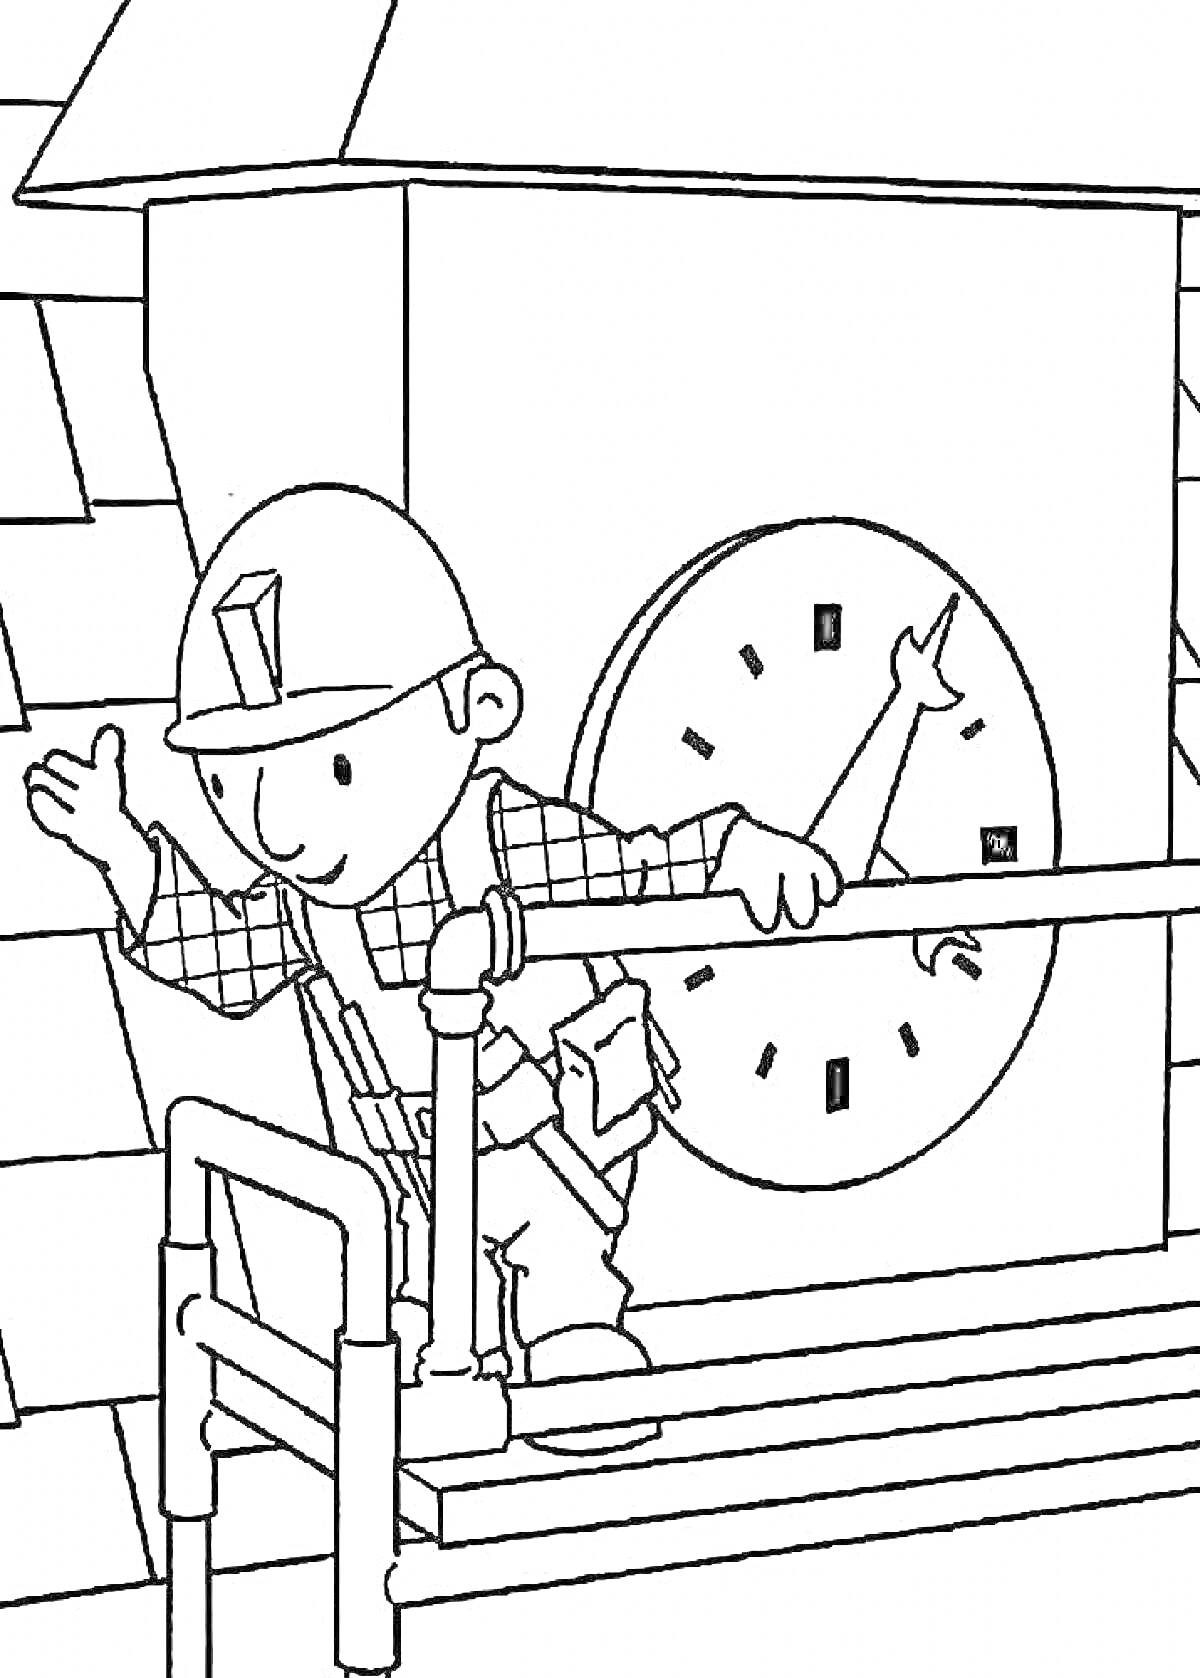 Рабочий на строительных лесах возле часов на стене здания в защитной каске и снаряжении